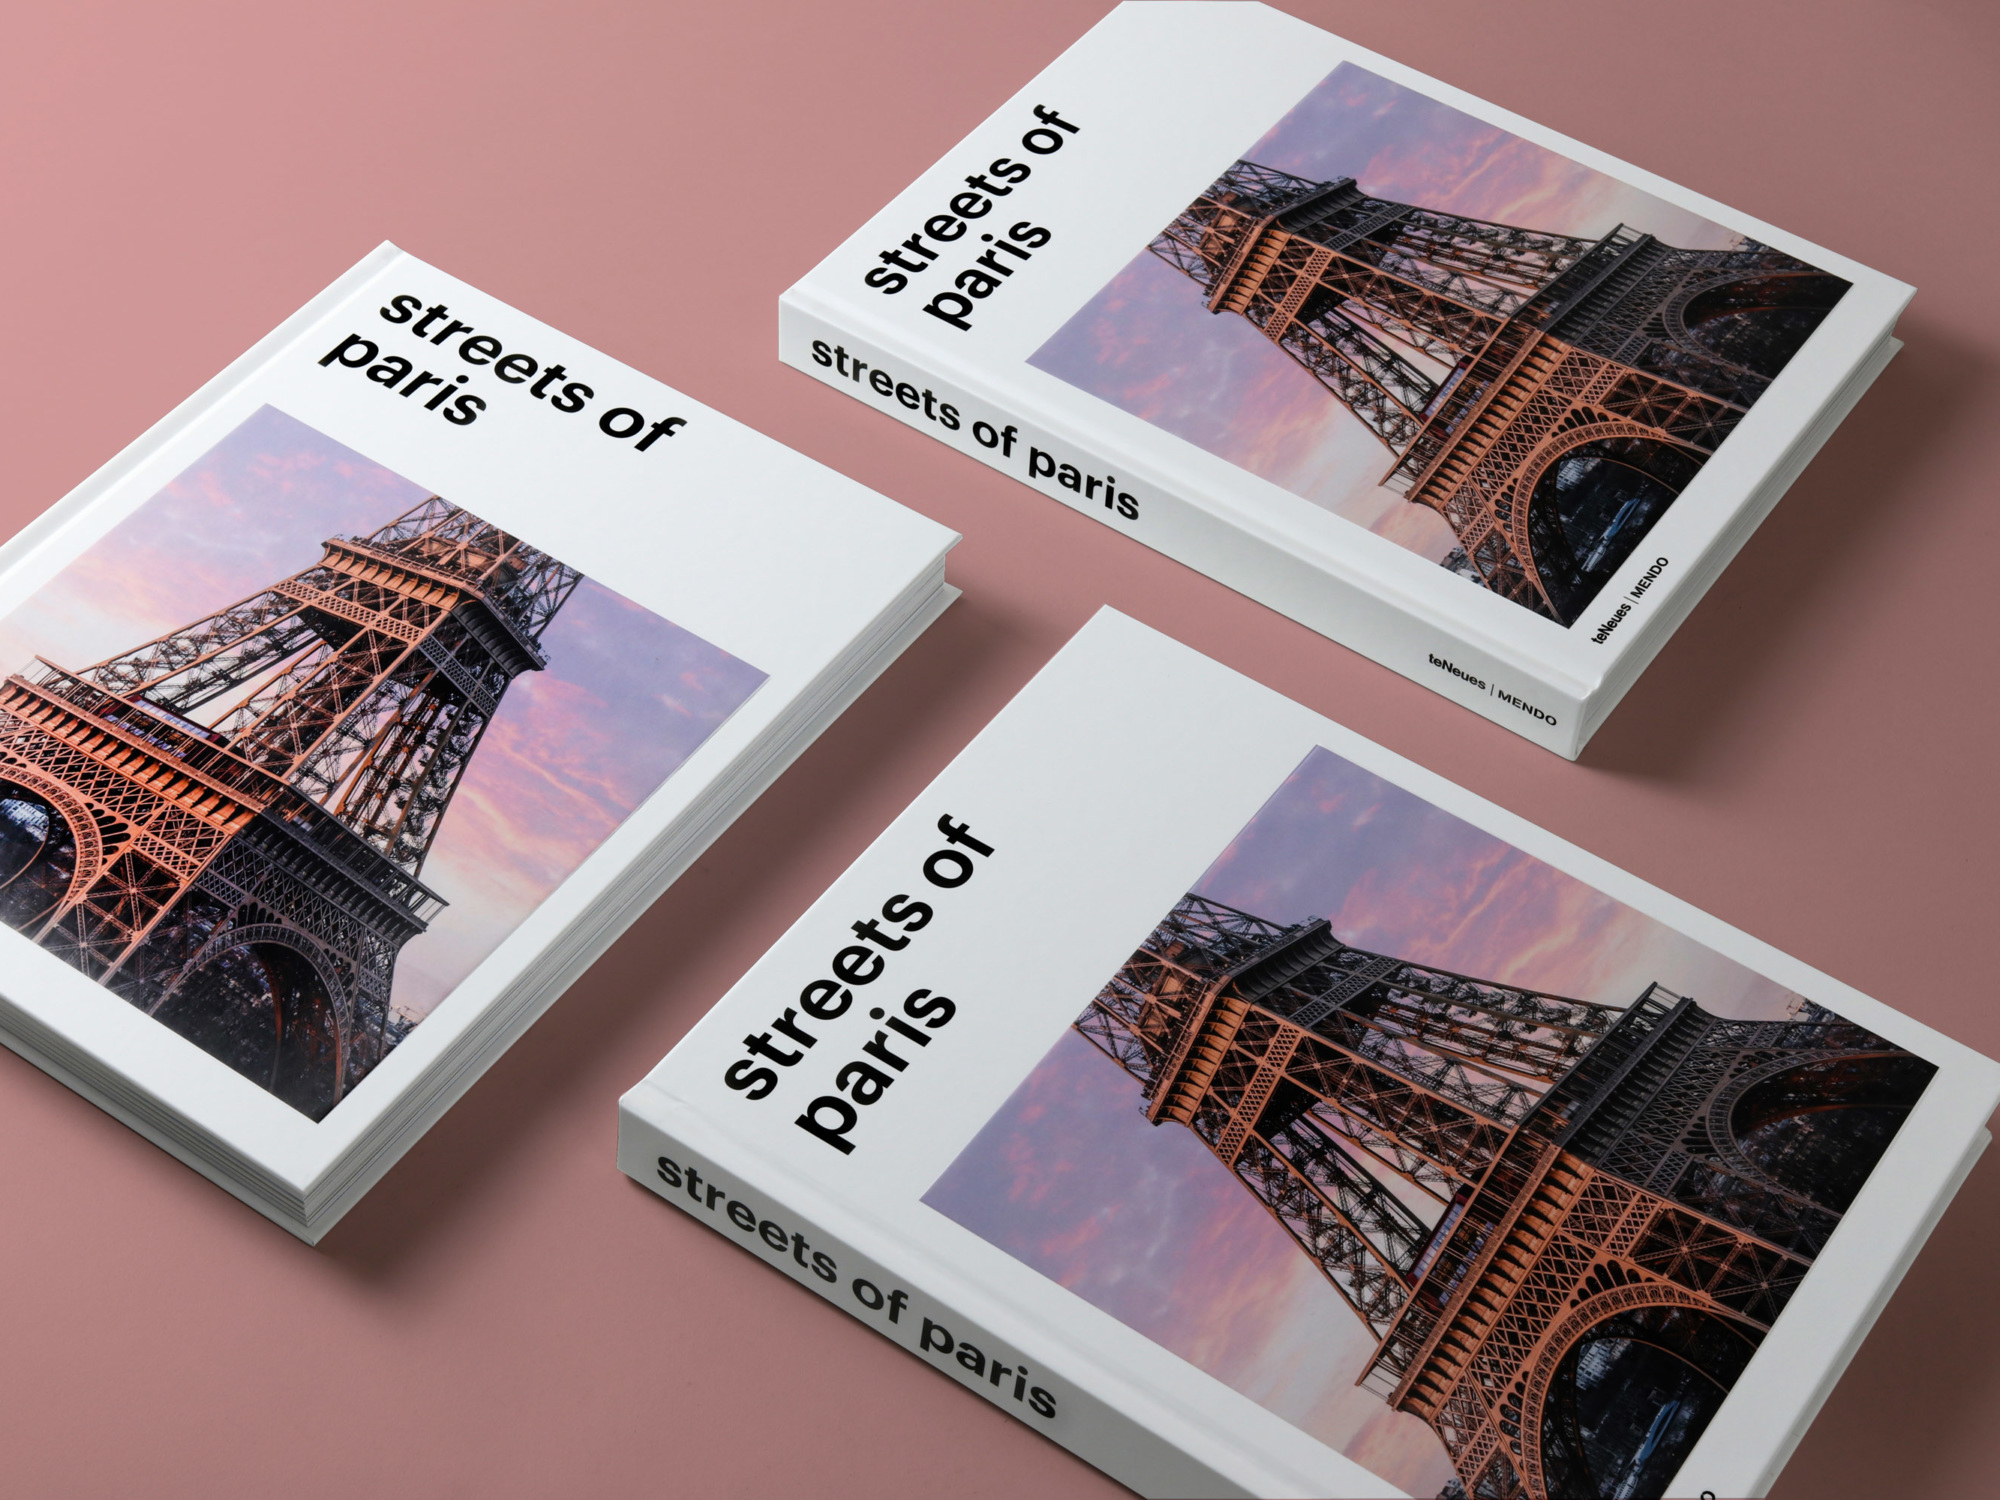 mendo-book-streets-of-paris-studio-25-2000x1500-c-default (1).jpg